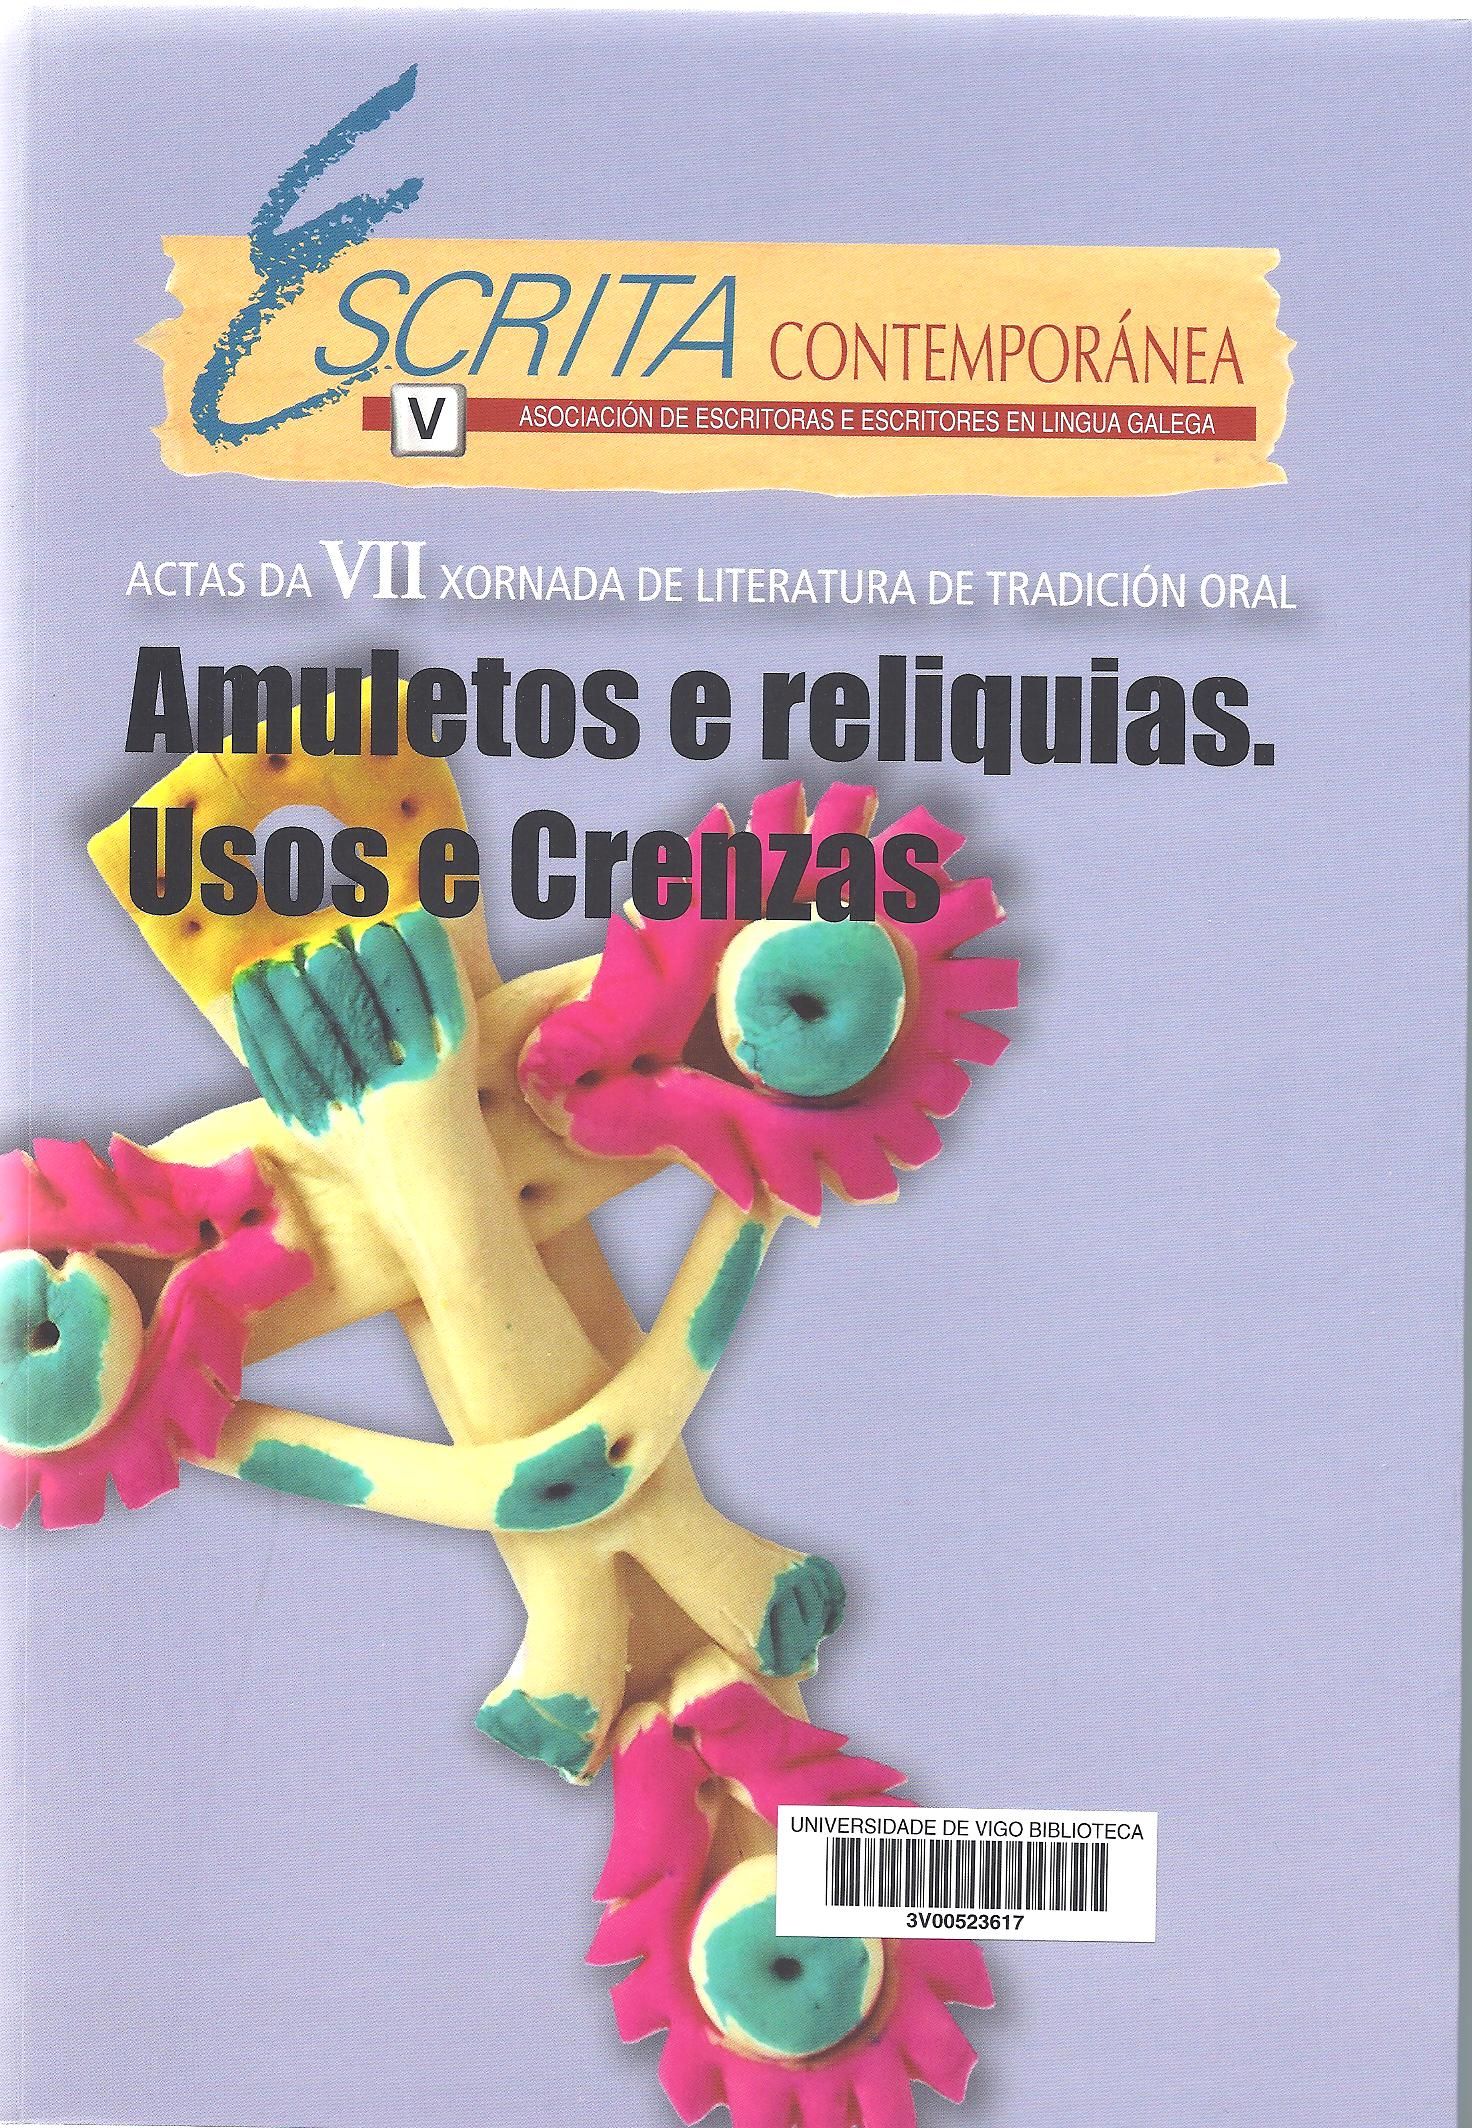 Imagen de portada del libro Amuletos e reliquias, usos e crenzas